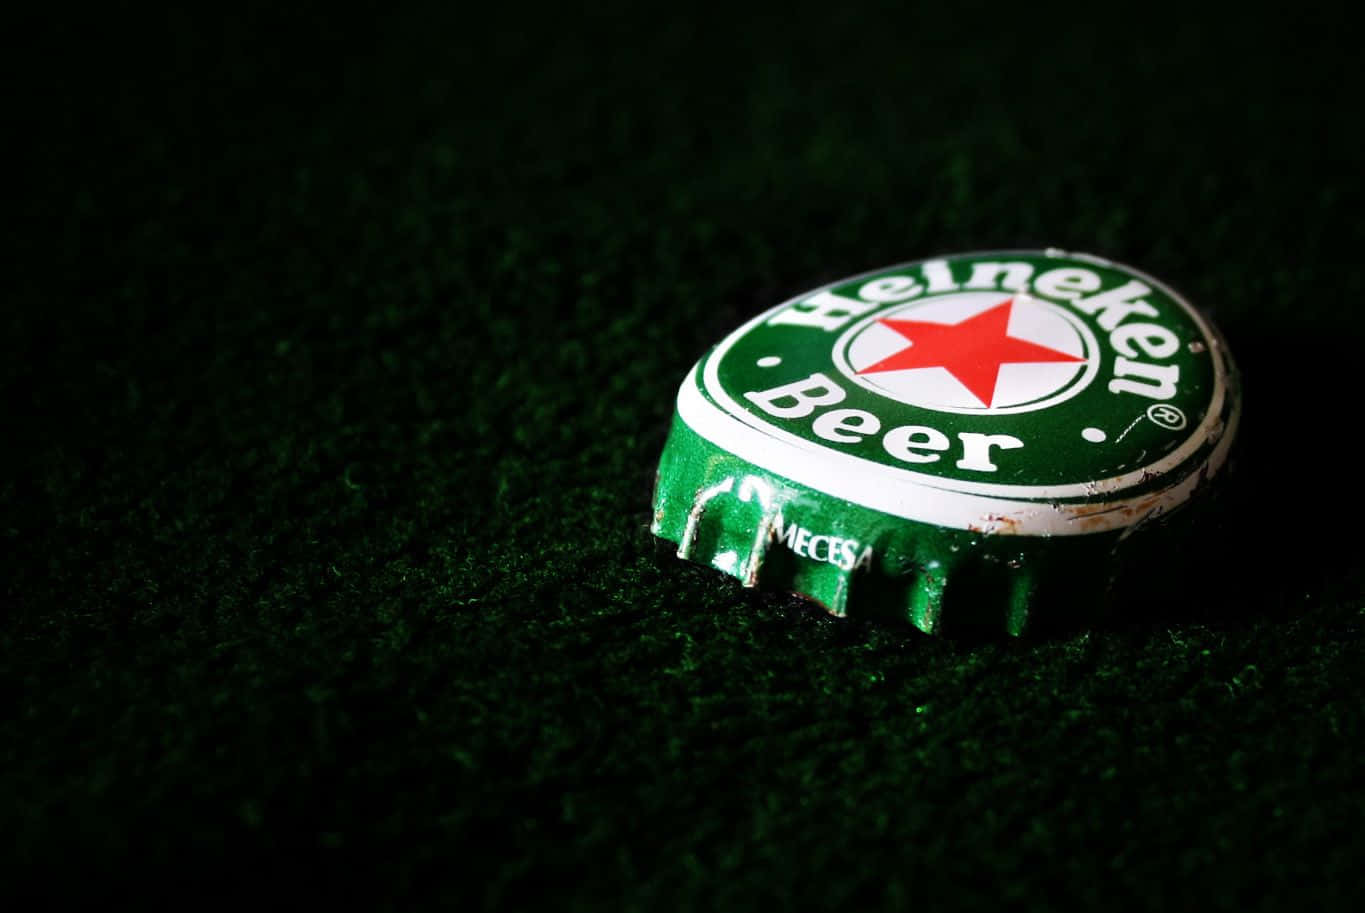 Nigeria, Vietnam drag Heineken's global beer volume down 2.8%